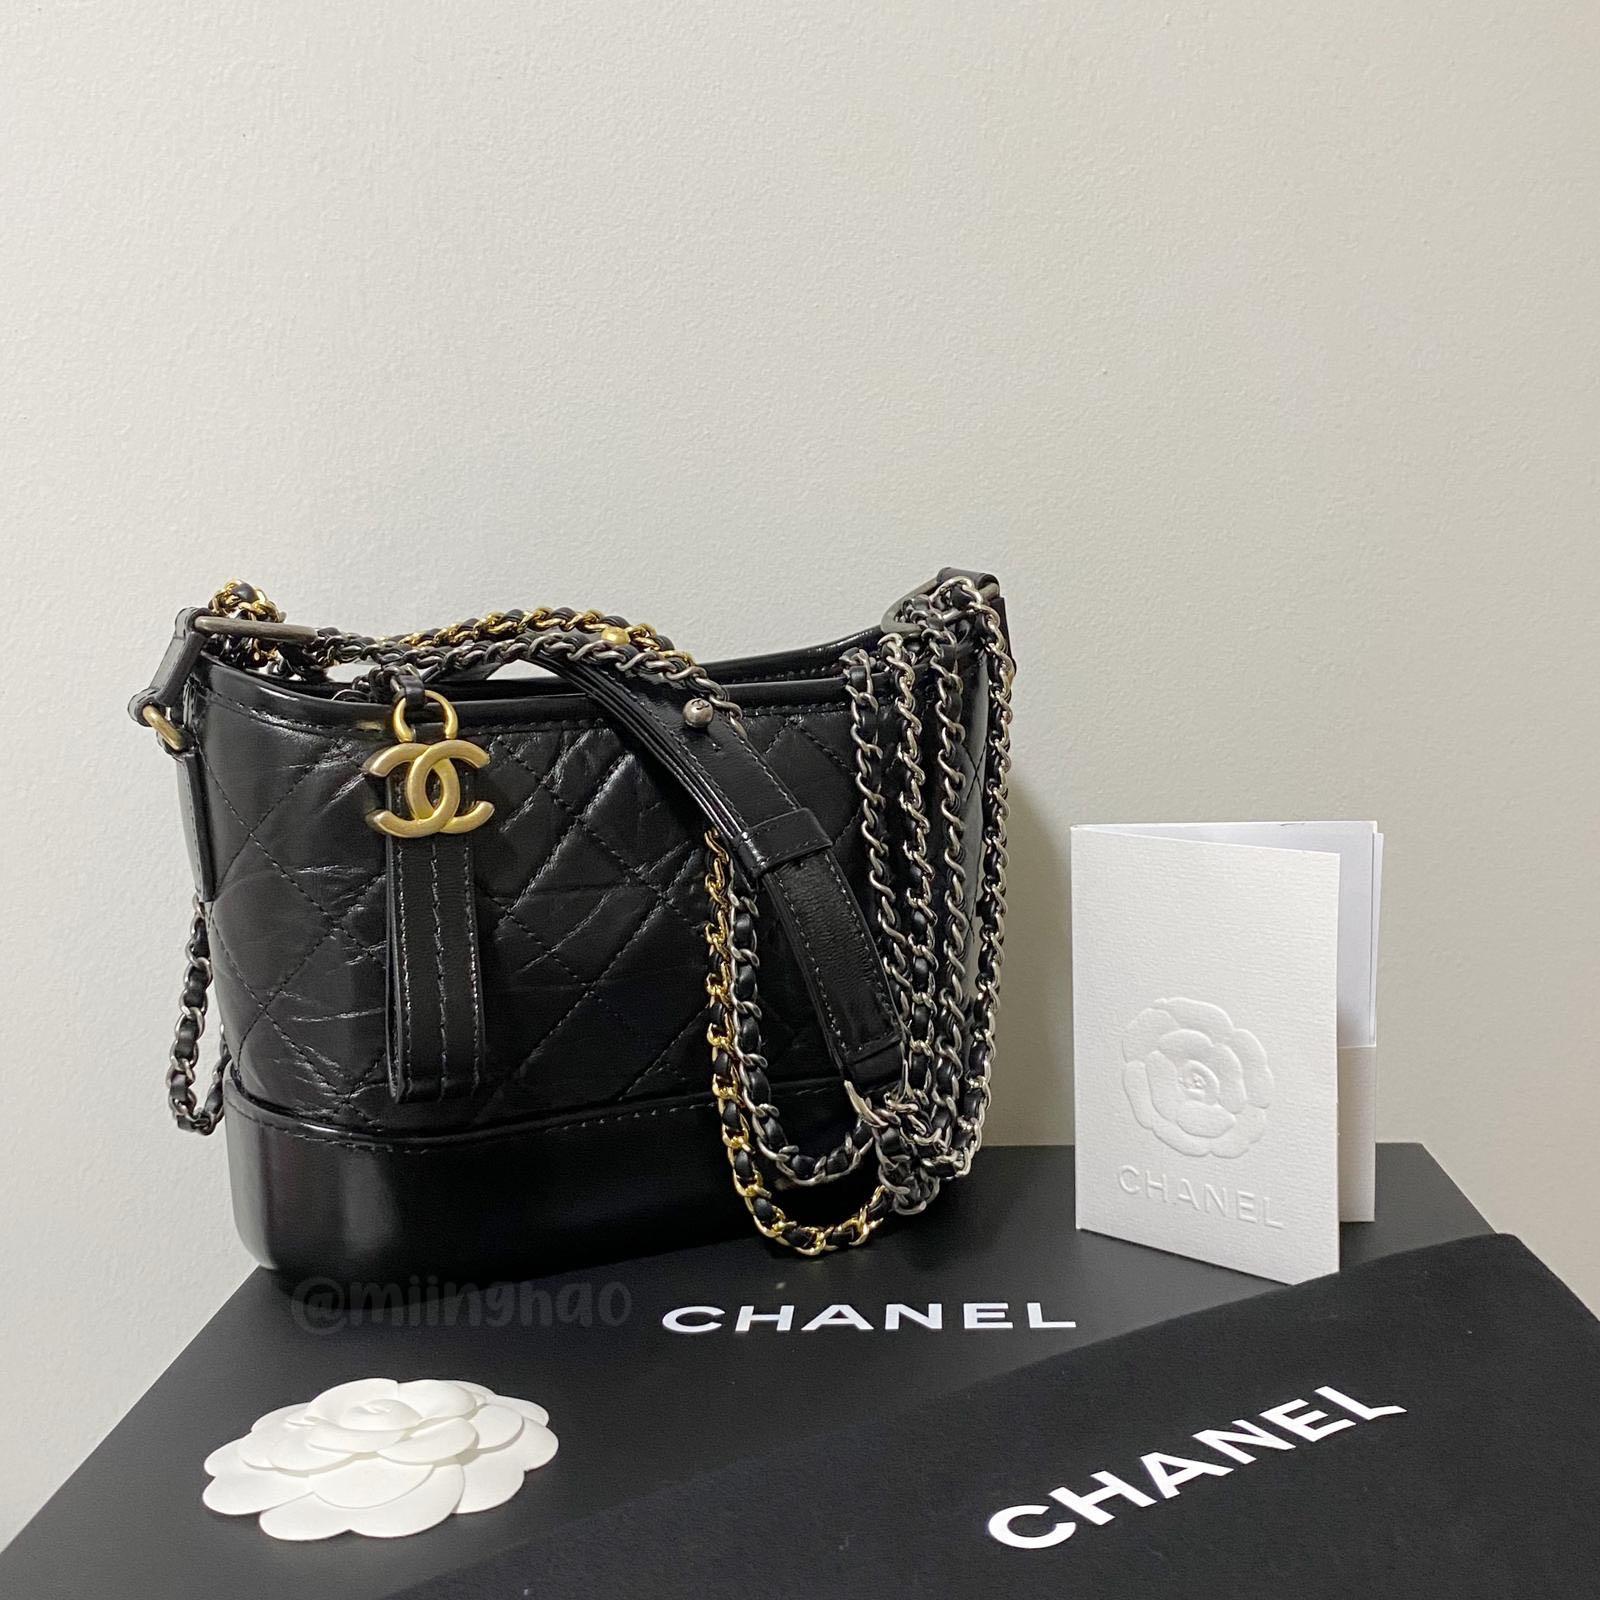 Shop CHANEL Chanel's Gabrielle Small Hobo Bag (A91810 Y61477 94305, A91810  B01532 N5230, A91810 Y61477 N4859, A91810 Y61477 C0200) by dignite